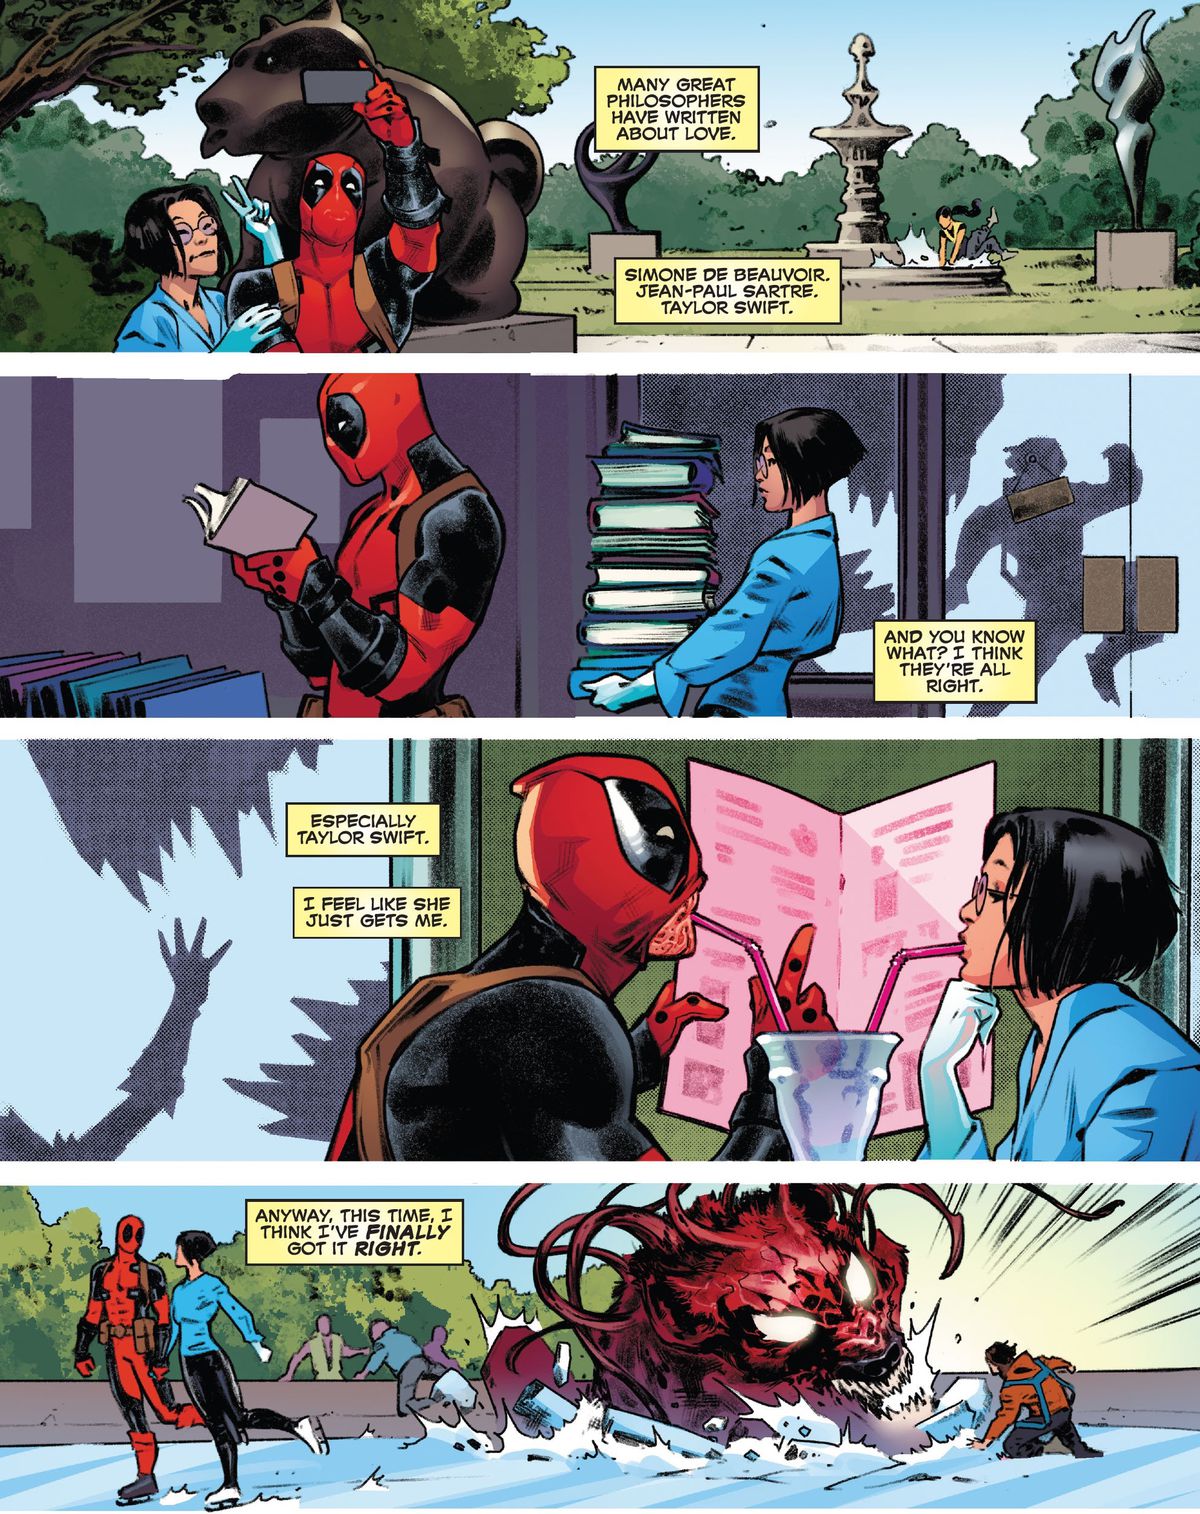 Deadpool et sa chérie, Valentine Vuong, visitent un parc de sculptures, une librairie, un restaurant et une patinoire alors qu'un gros monstre chasse secrètement les gens derrière eux.  La narration de Deadpool réfléchit à la façon dont cette fois, il a finalement réussi à faire l'amour, dans Deadpool # 6 (2023).